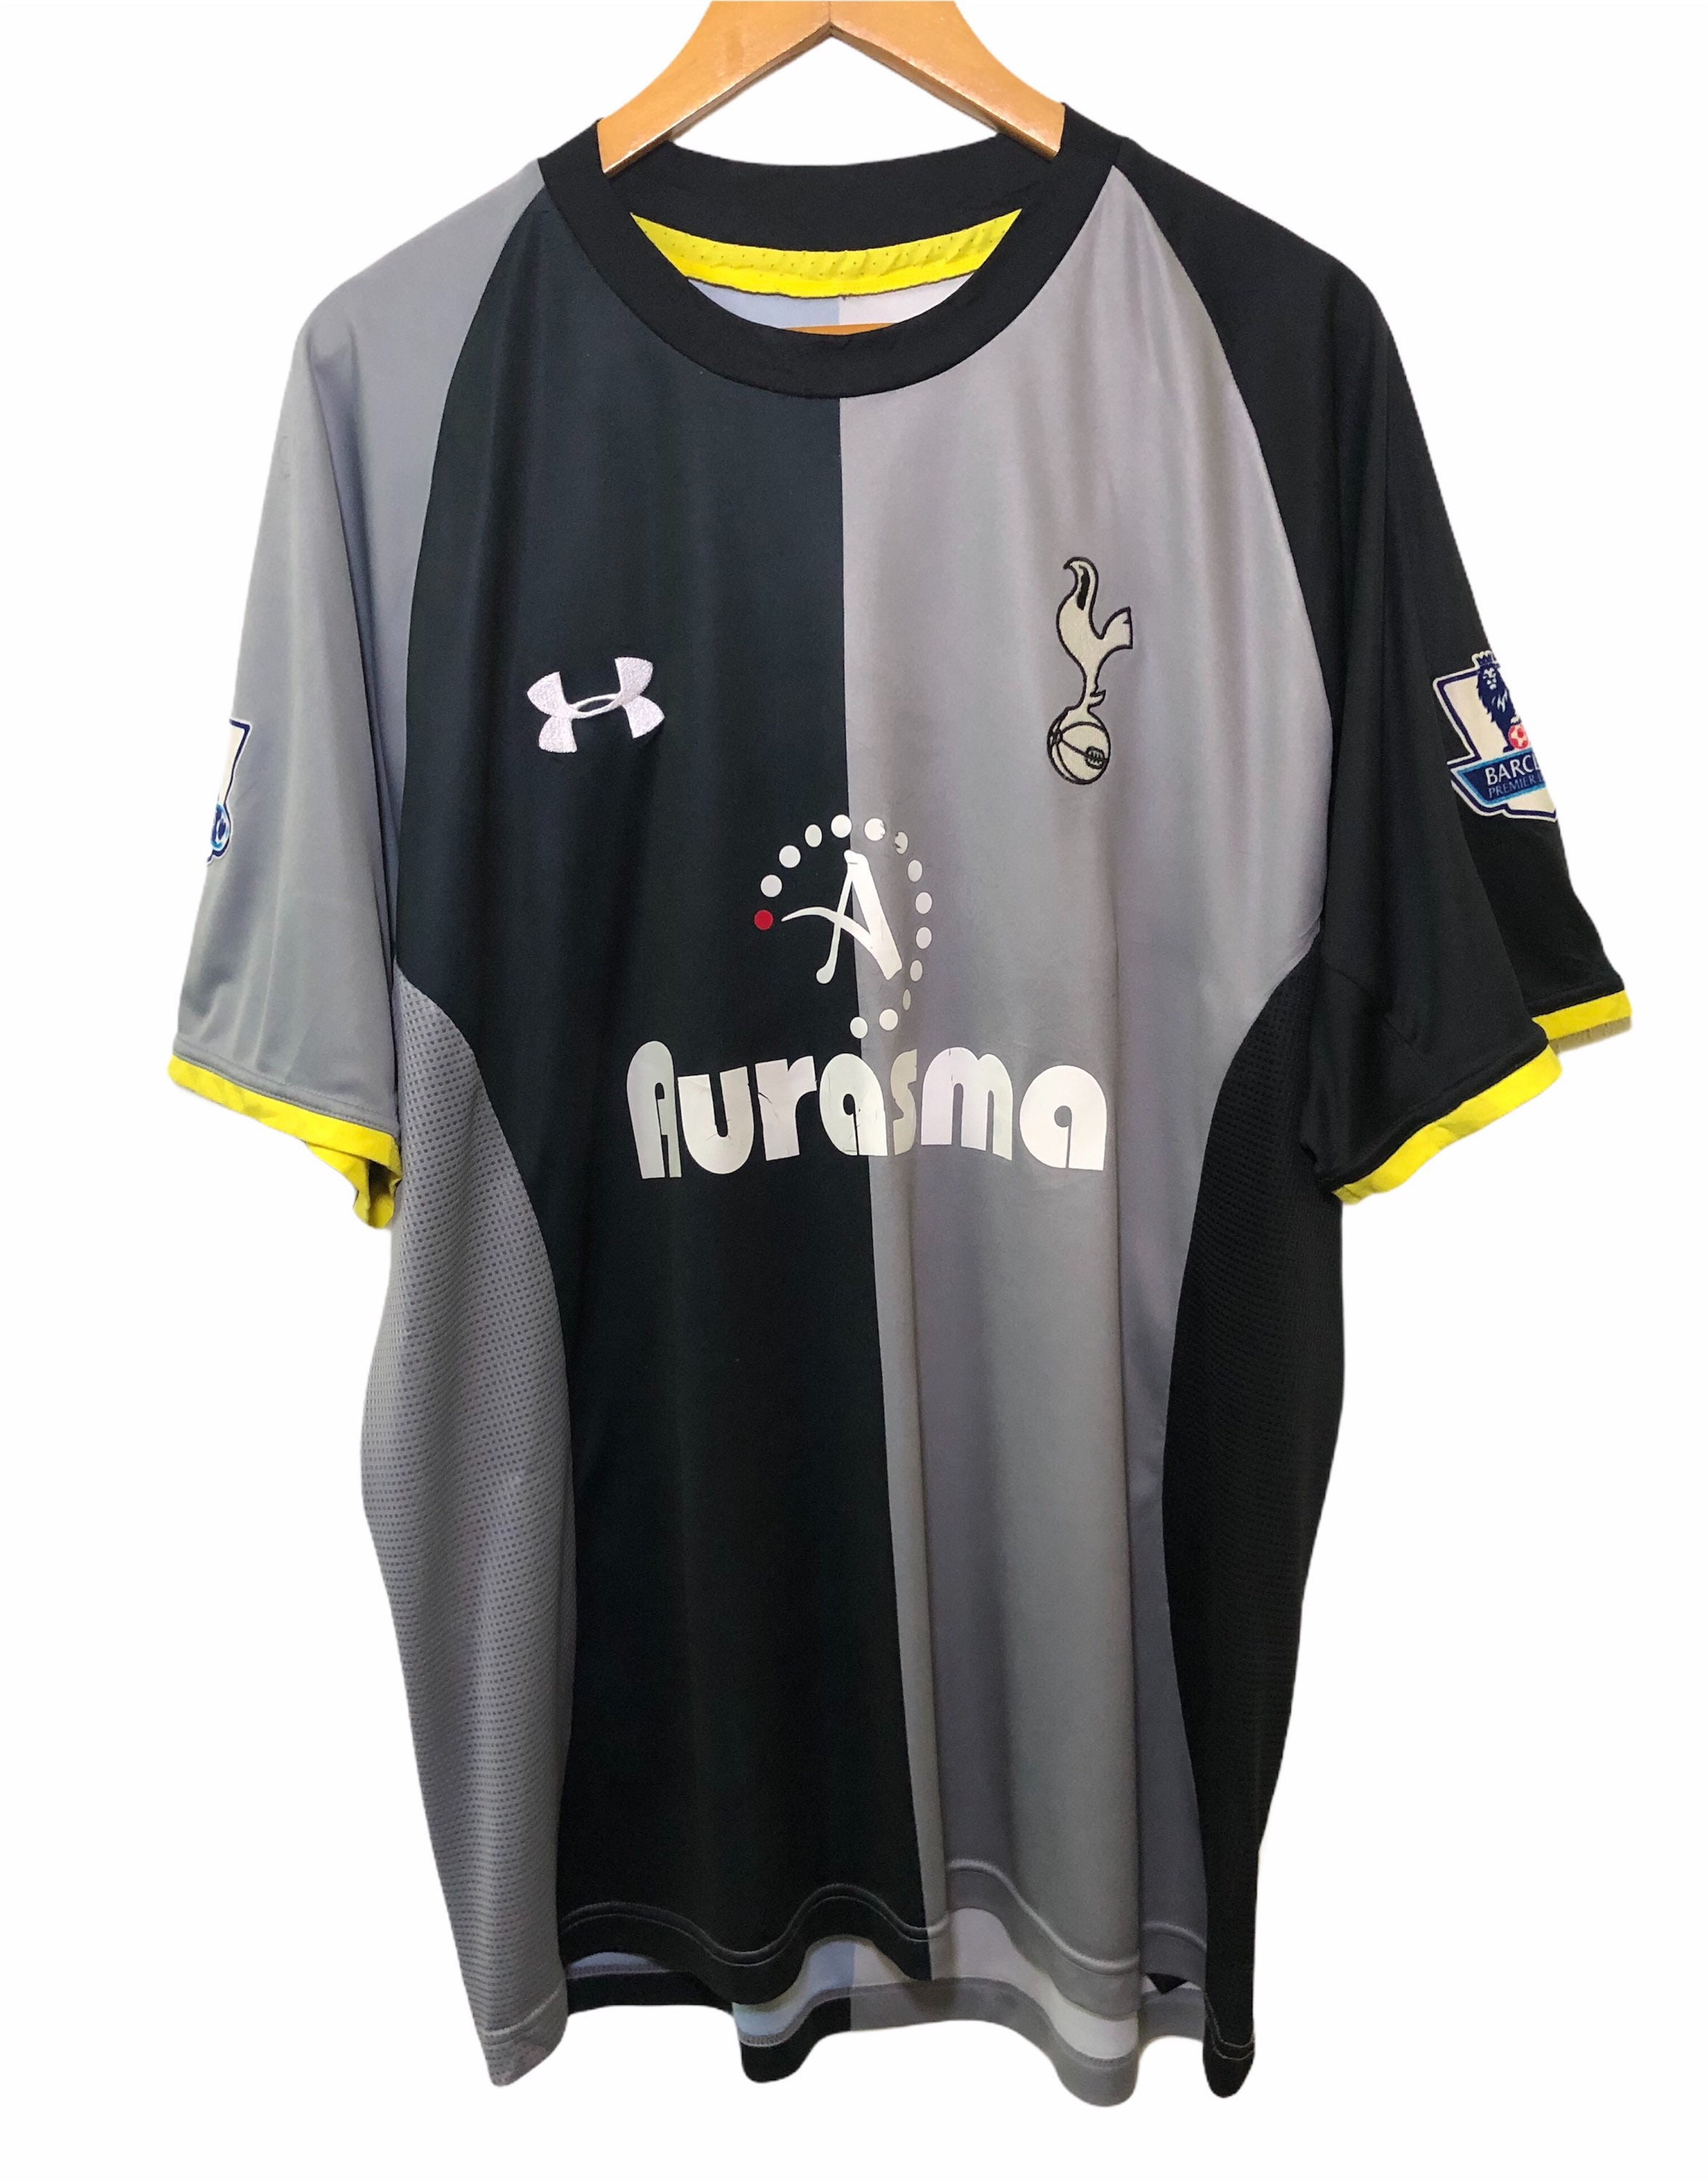 Tottenham Hotspur 2011-2012 Home Shirt #3 Bale - Online Store From